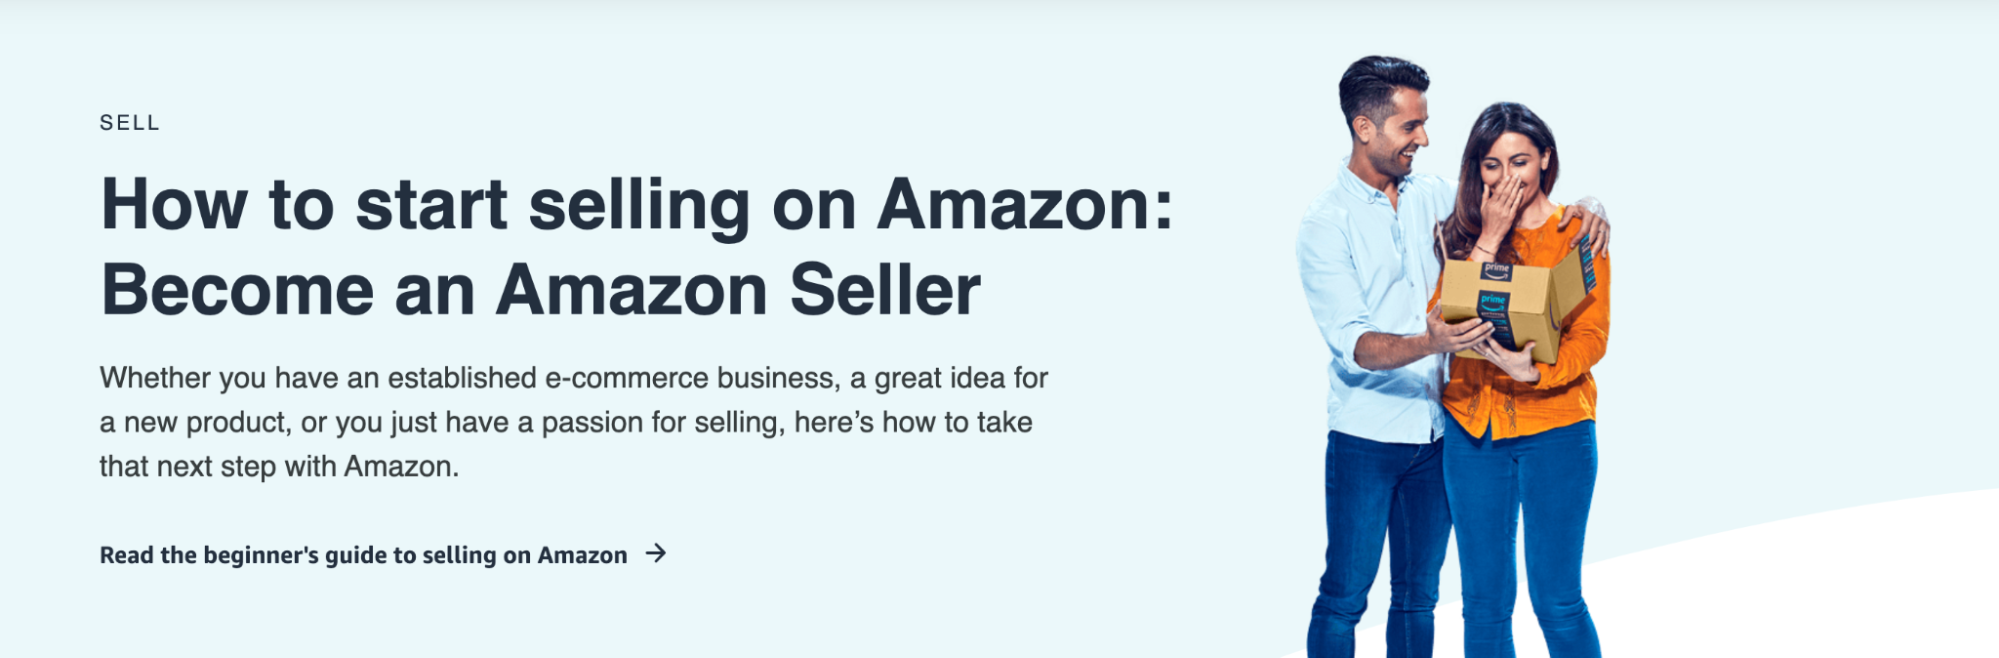 Amazon Selling Methods